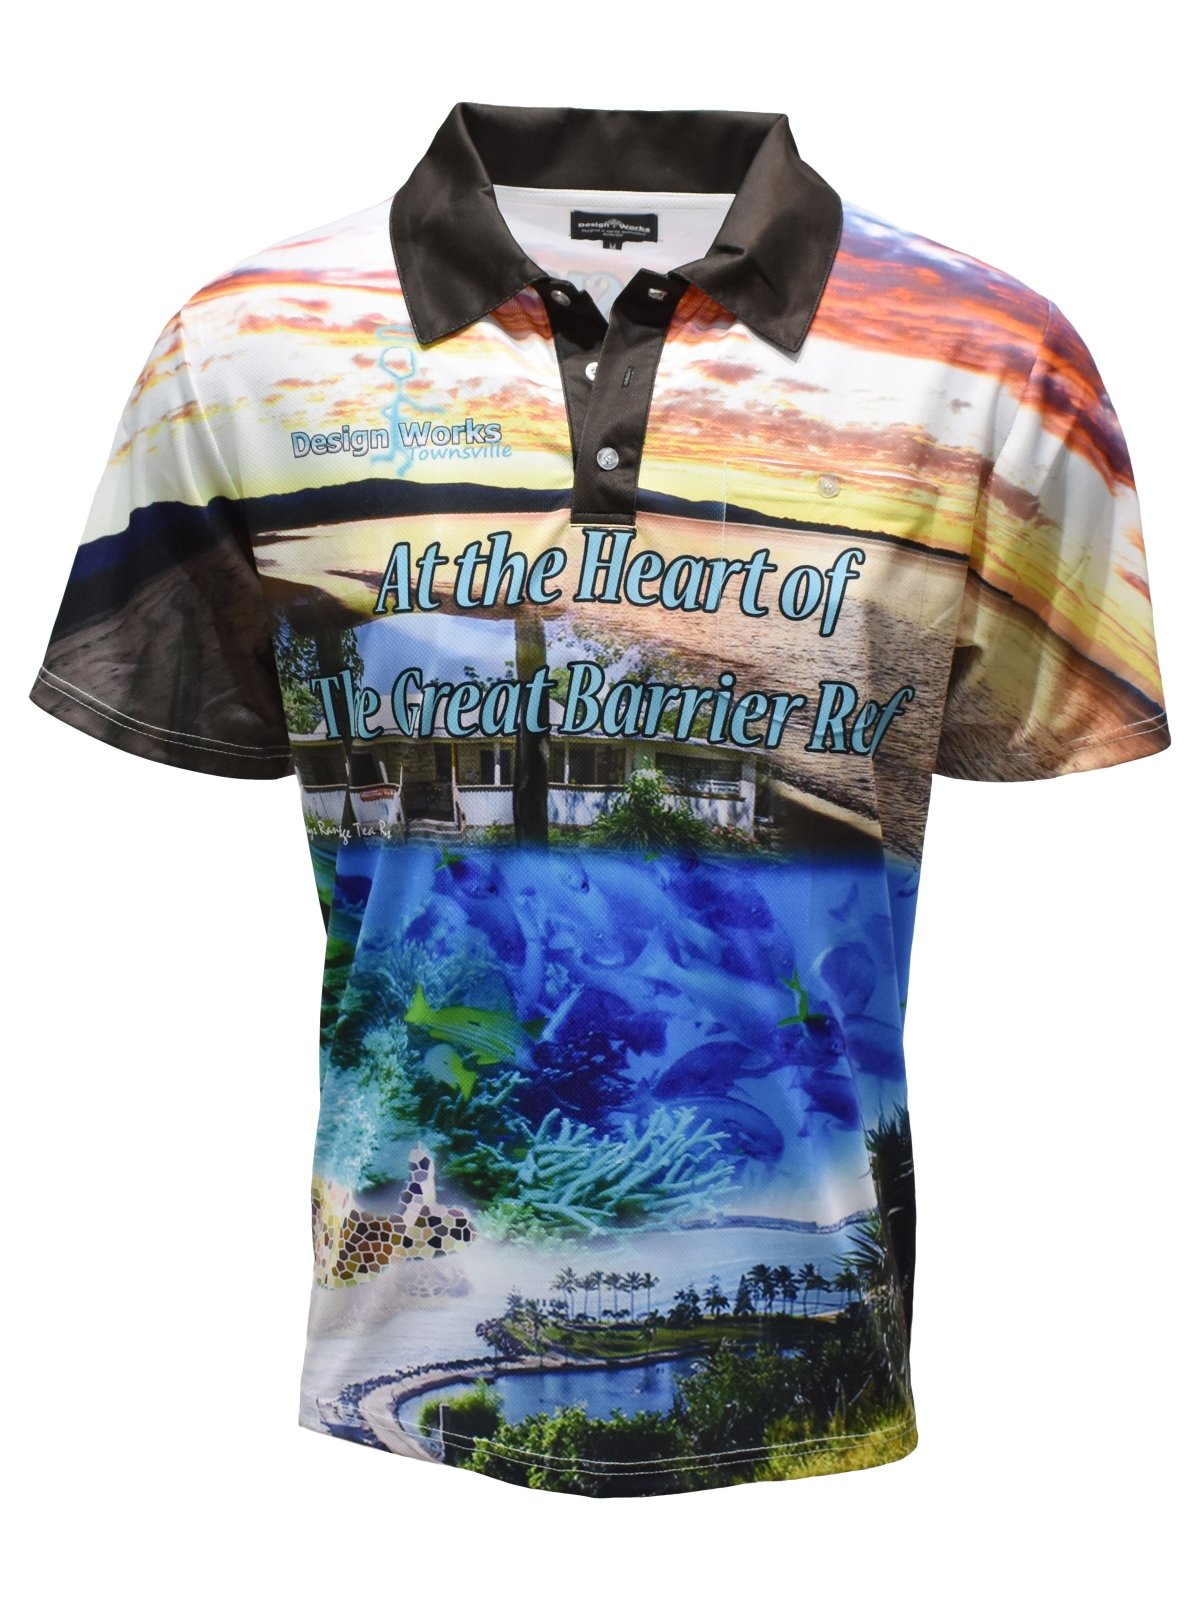 Townsville Barra – Fishing Shirt by LJMDesign